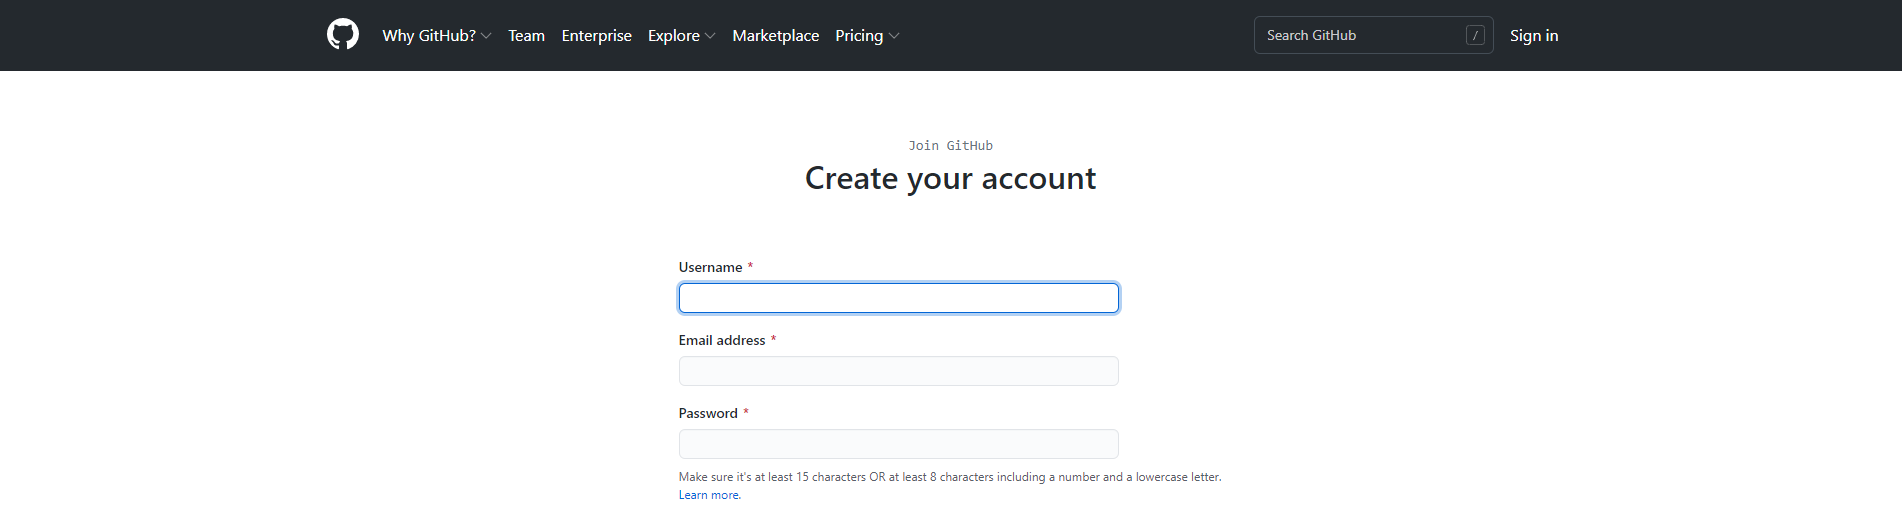 Creating a GitHub Account